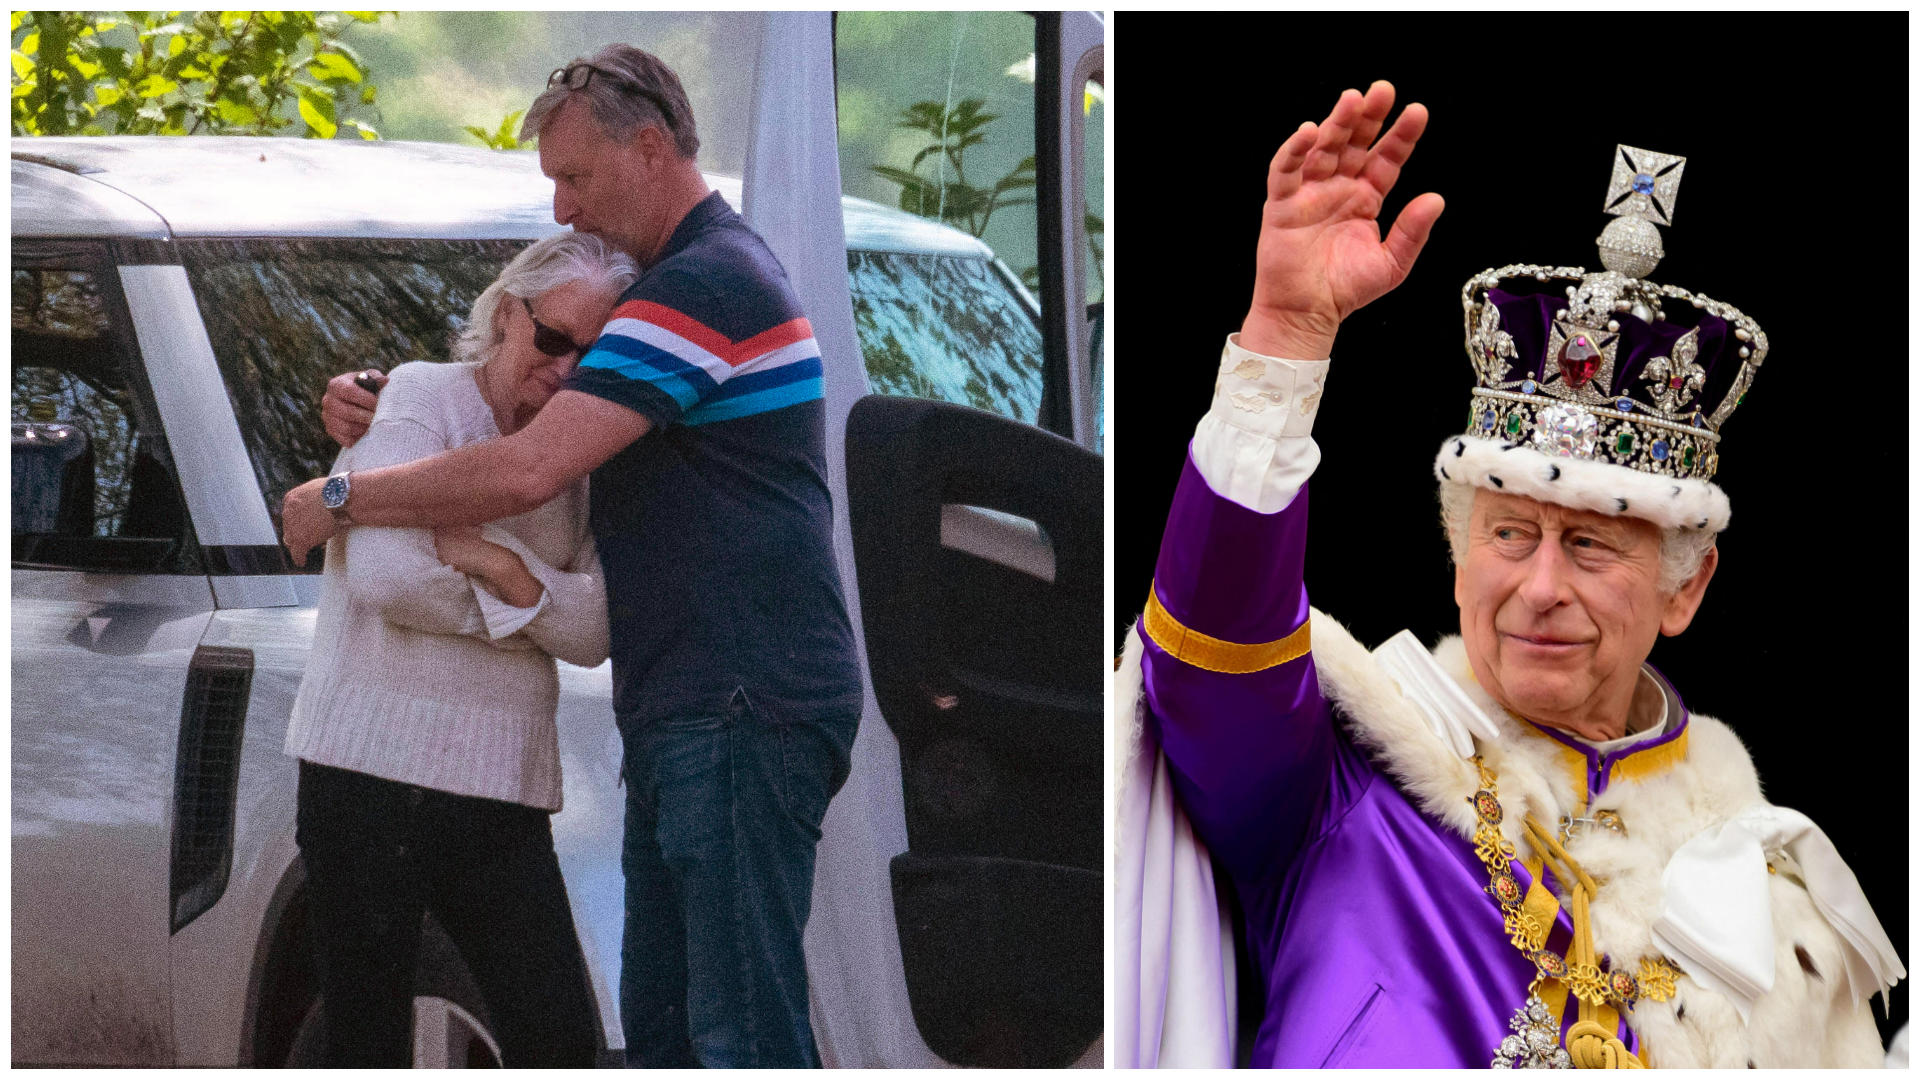 Collage aus 2 Bildern, v.l.: Angela Kelly liegt in den Armen eines Mannes und weint. Beide stehen vor weißen Autos. Rechtes Bild: König Charles winkt nach seiner Krönung vom Balkon des Buckingham Palace. Er trägt seine Krone.